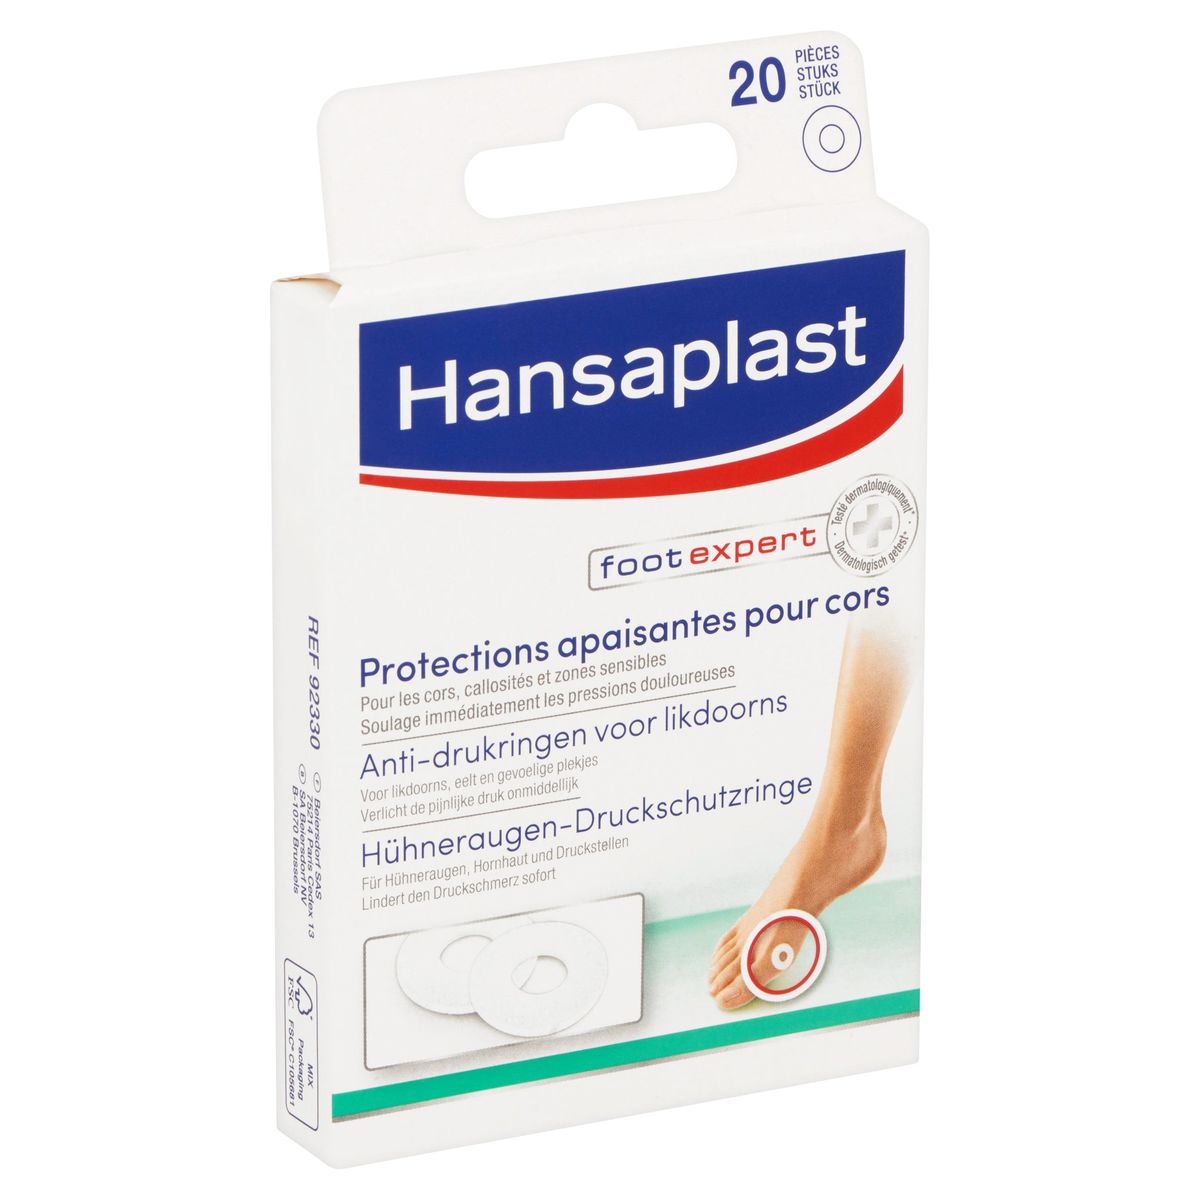 Hansaplast Foot Expert Protections Apaisantes pour Cors 20 Pièces